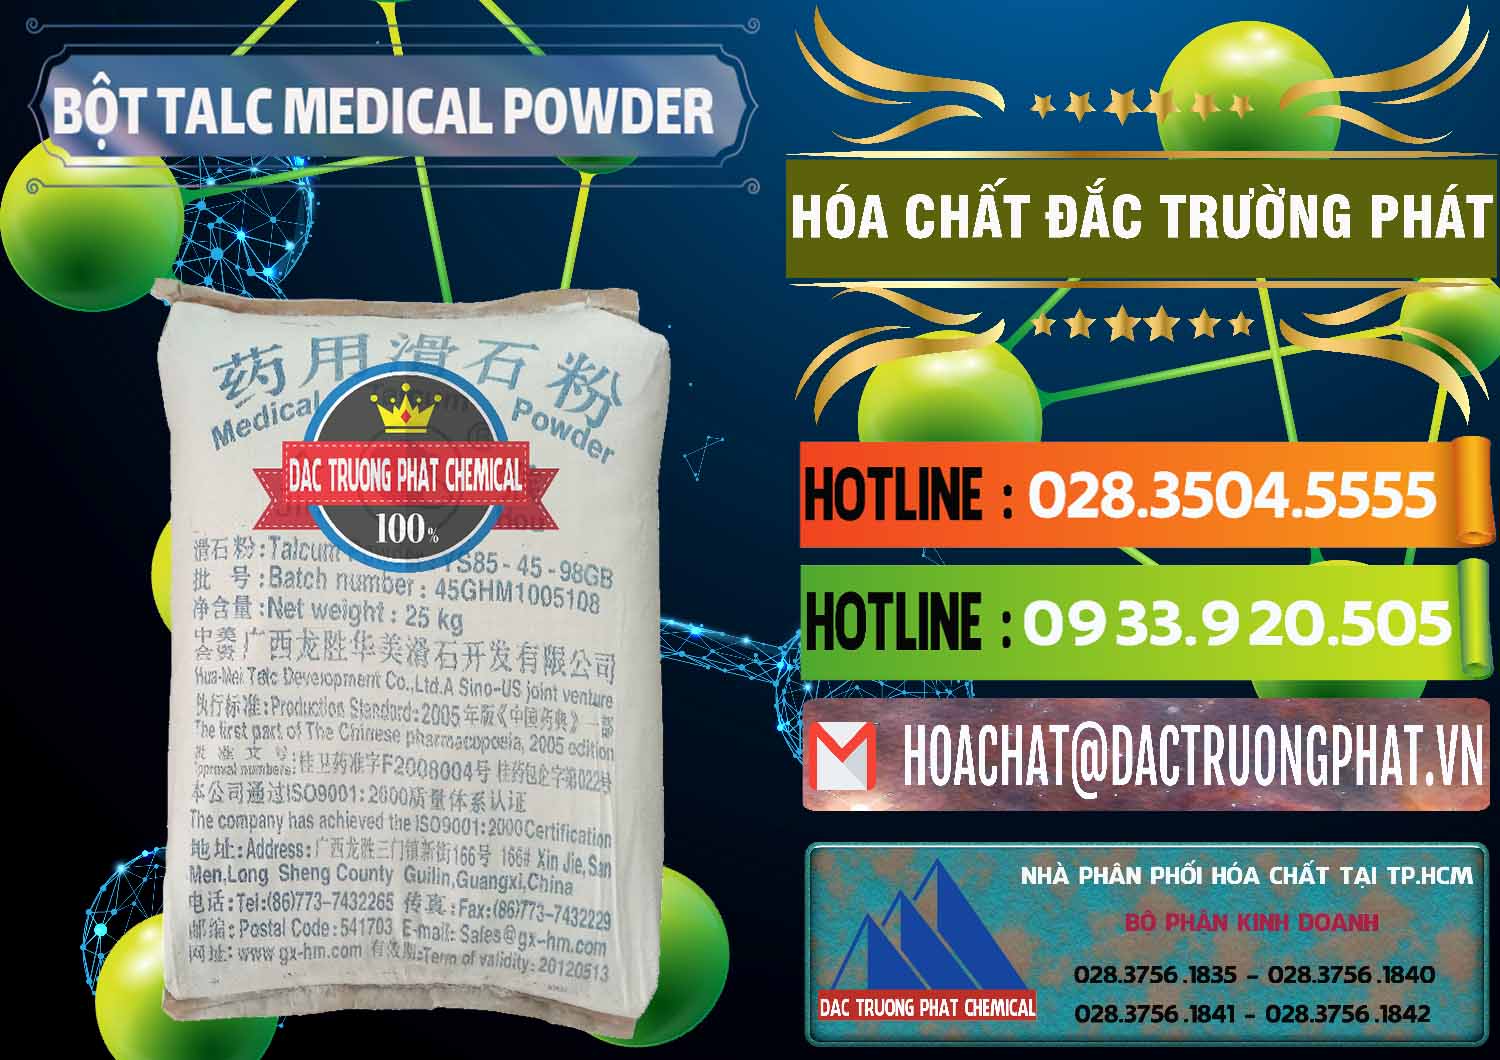 Chuyên bán _ cung ứng Bột Talc Medical Powder Trung Quốc China - 0036 - Cty chuyên phân phối - kinh doanh hóa chất tại TP.HCM - cungcaphoachat.com.vn